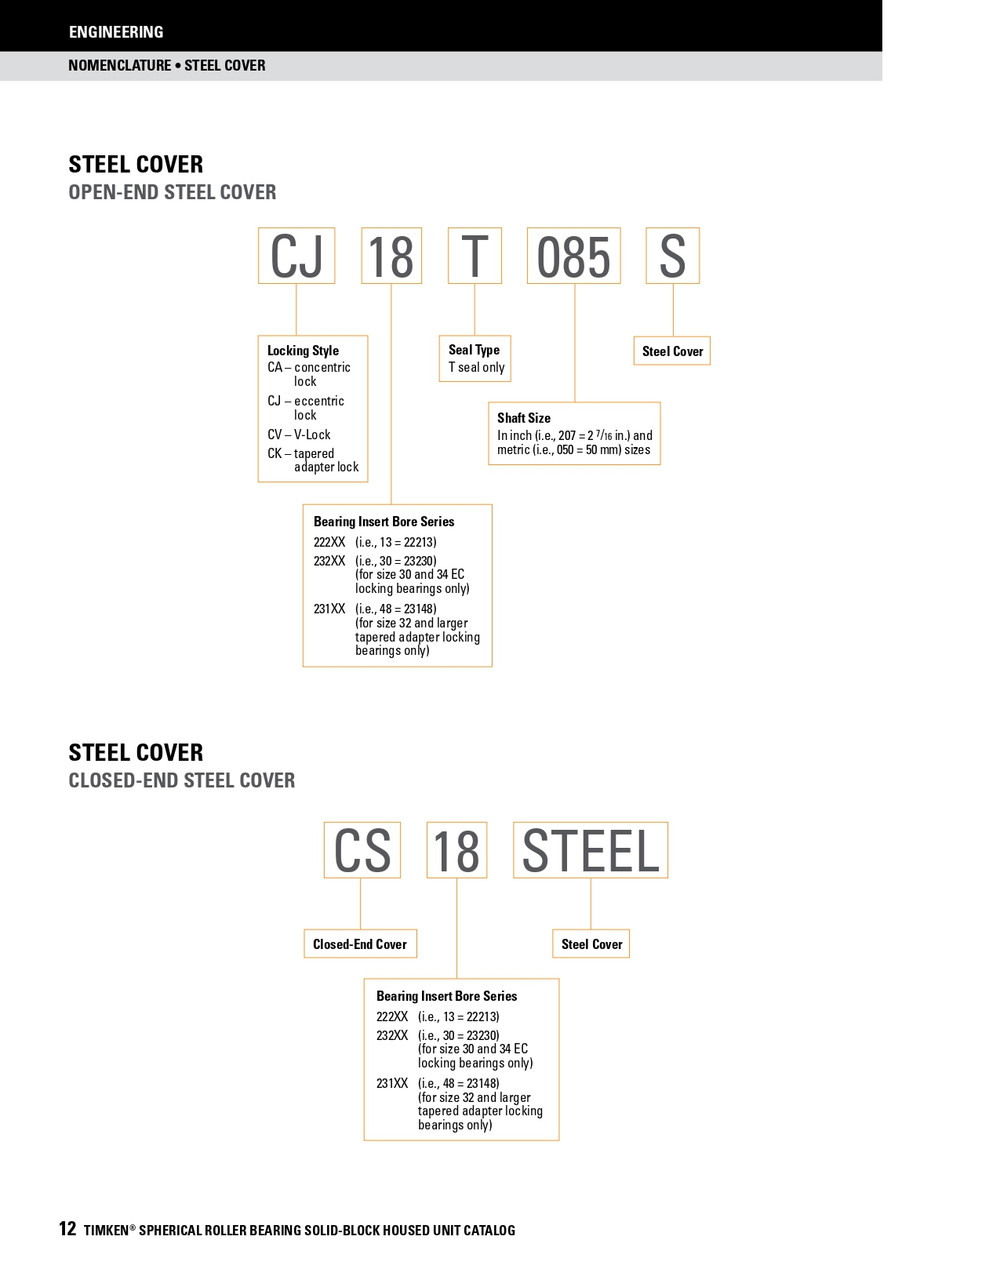 3-1/2" Timken SRB Steel Open End Cover w/Teflon Seal - TA/DV Taper Lock Bushing Type  CK20T308S